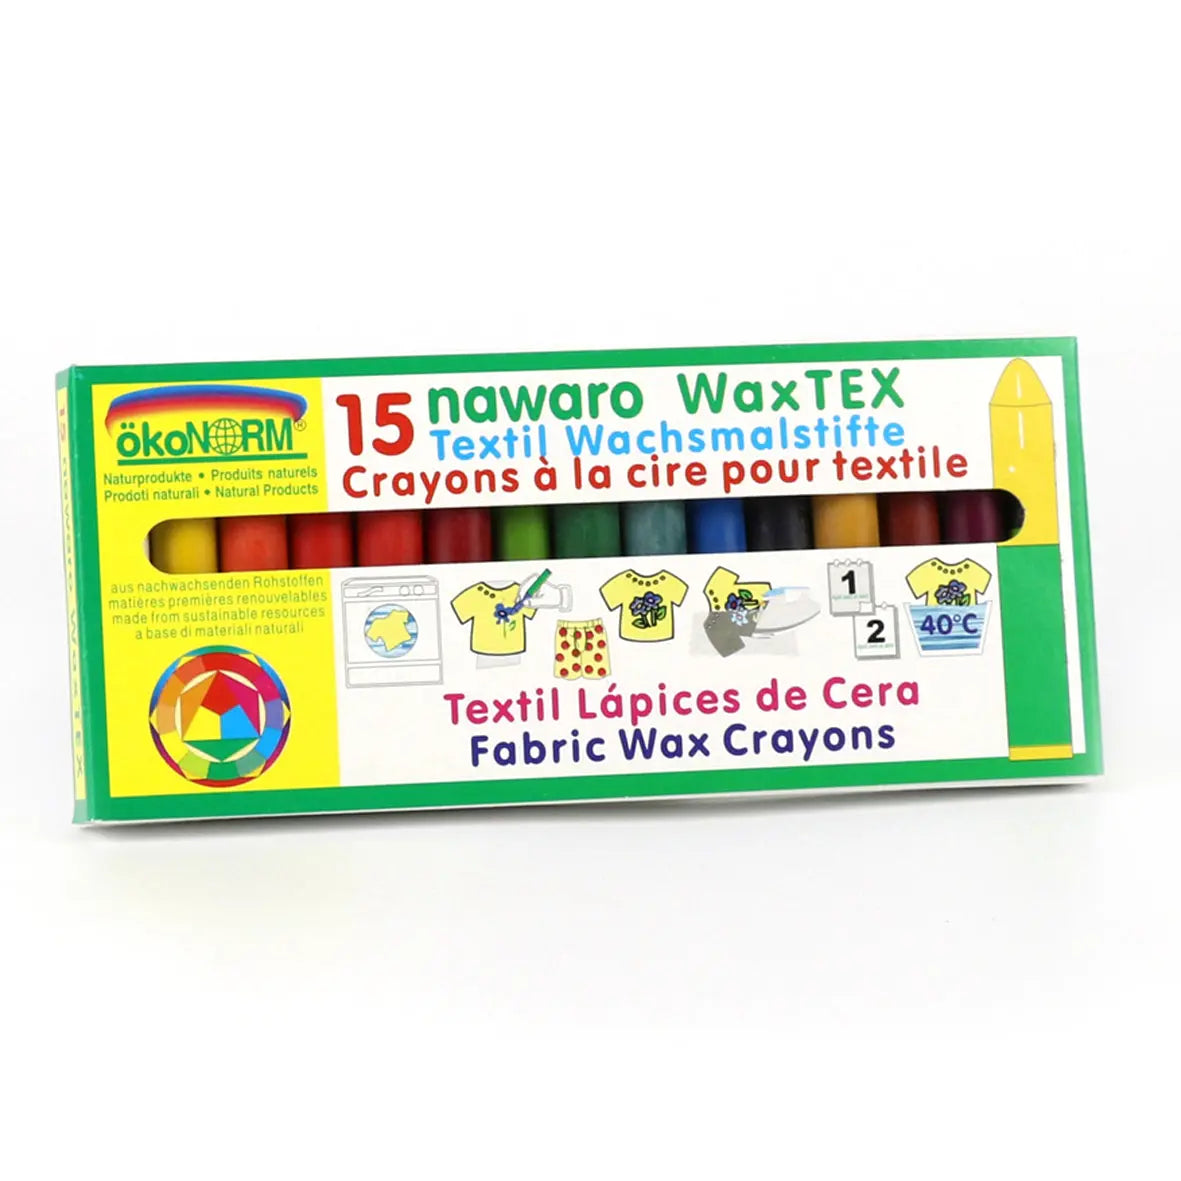 Natural textile crayons